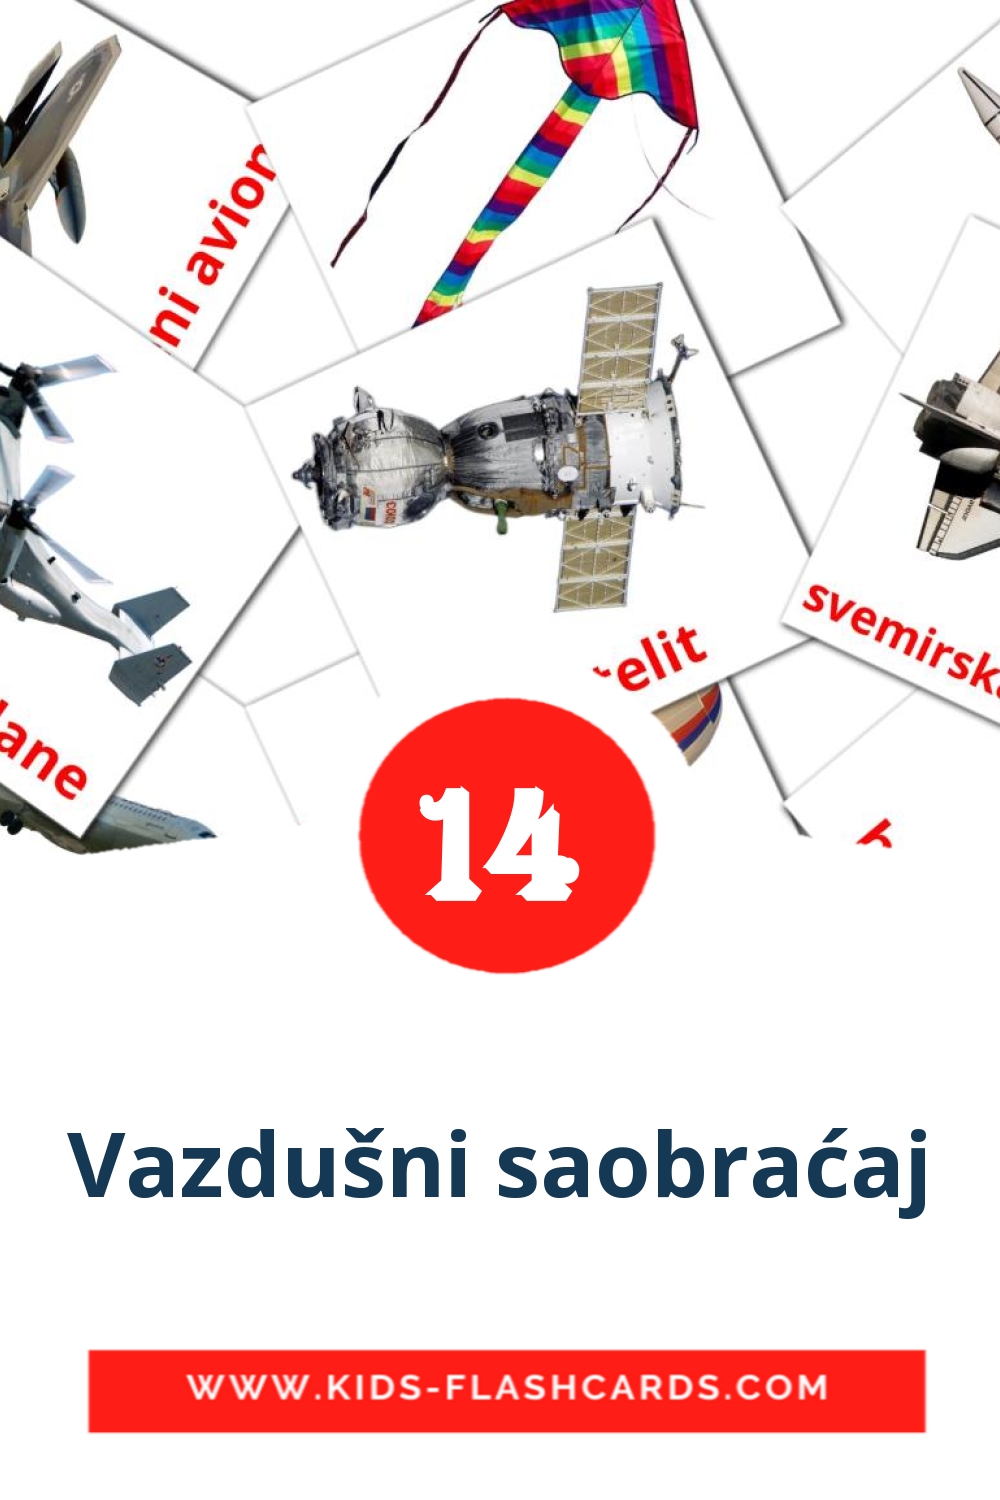 14 Cartões com Imagens de Vazdušni saobraćaj para Jardim de Infância em sérvio